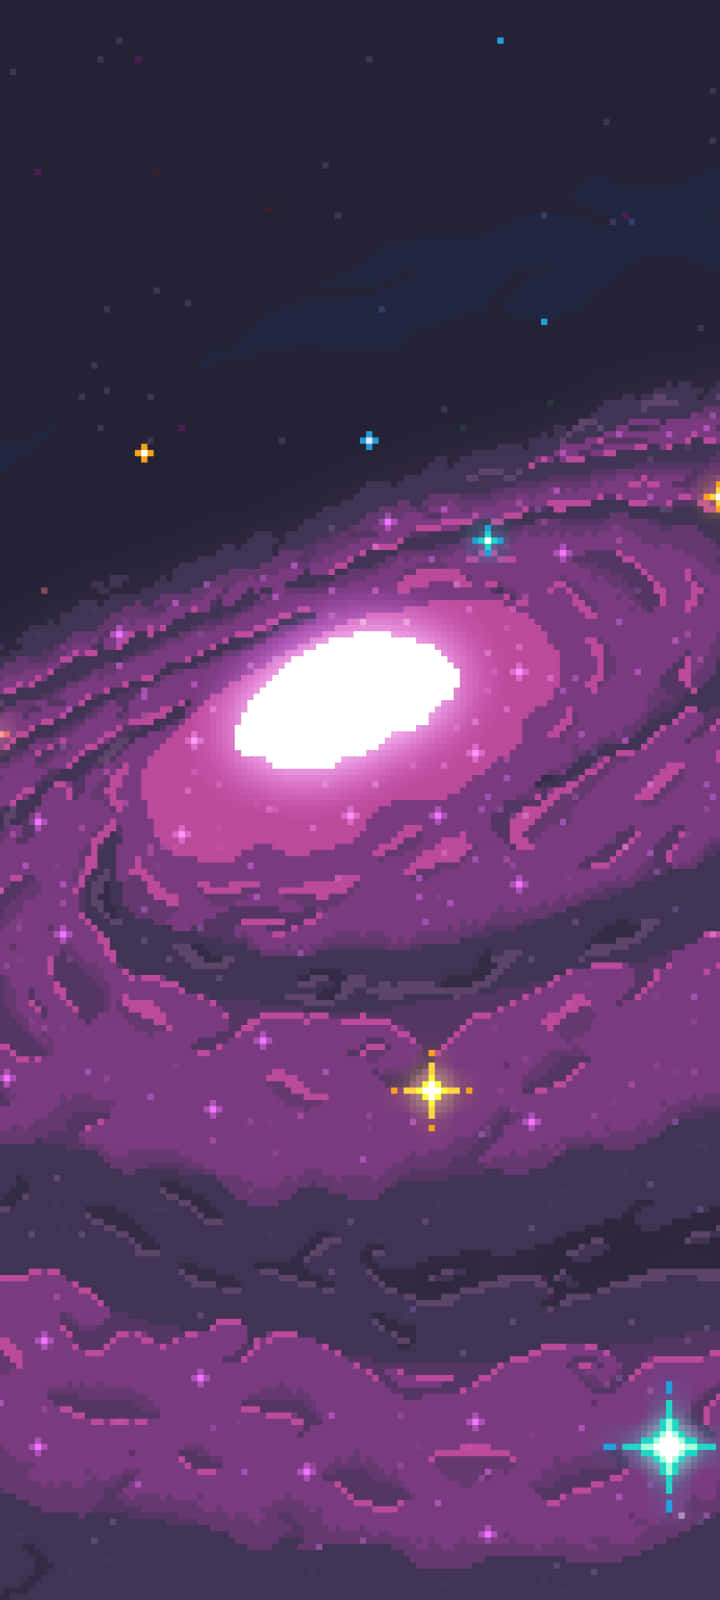 Pixelliggalaxgalax Pixelkonst Wallpaper